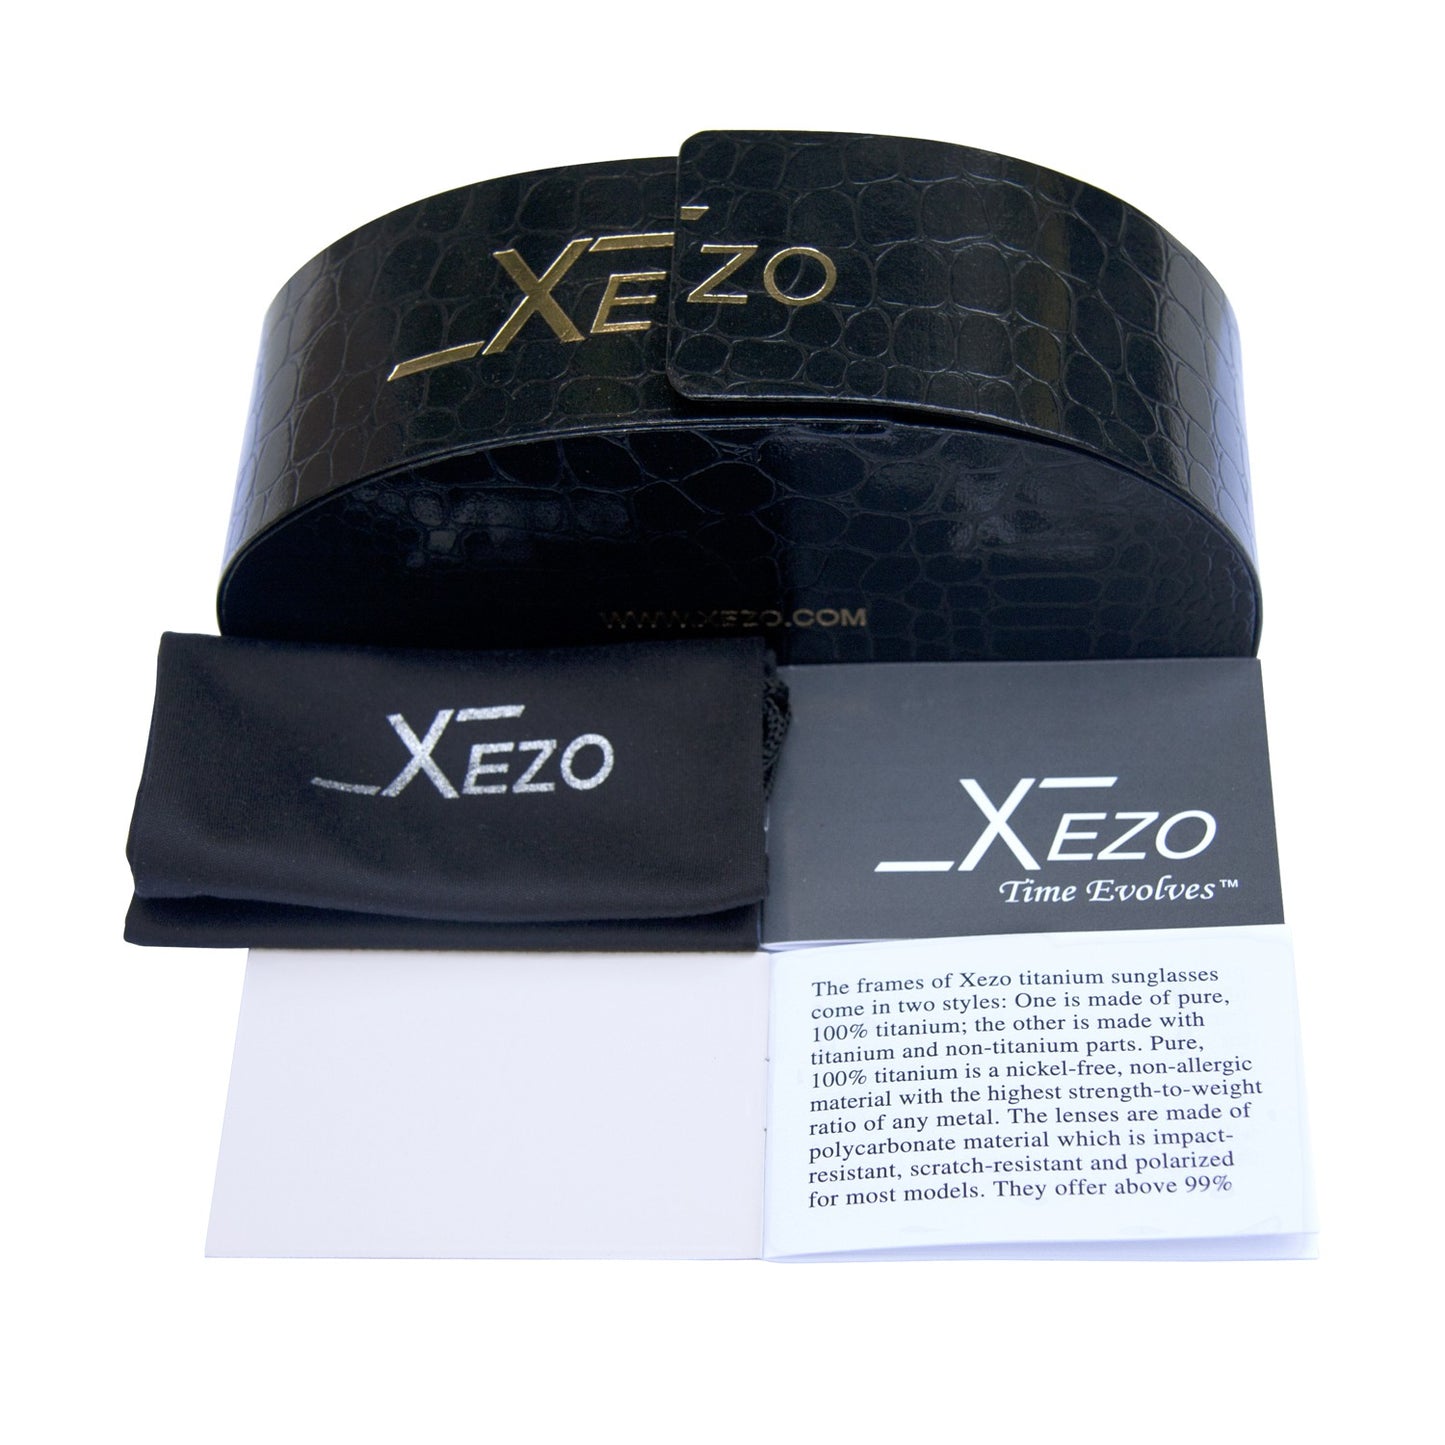 Xezo - Black gift box, black bag, and certificate of the Incognito 1400 GR sunglasses